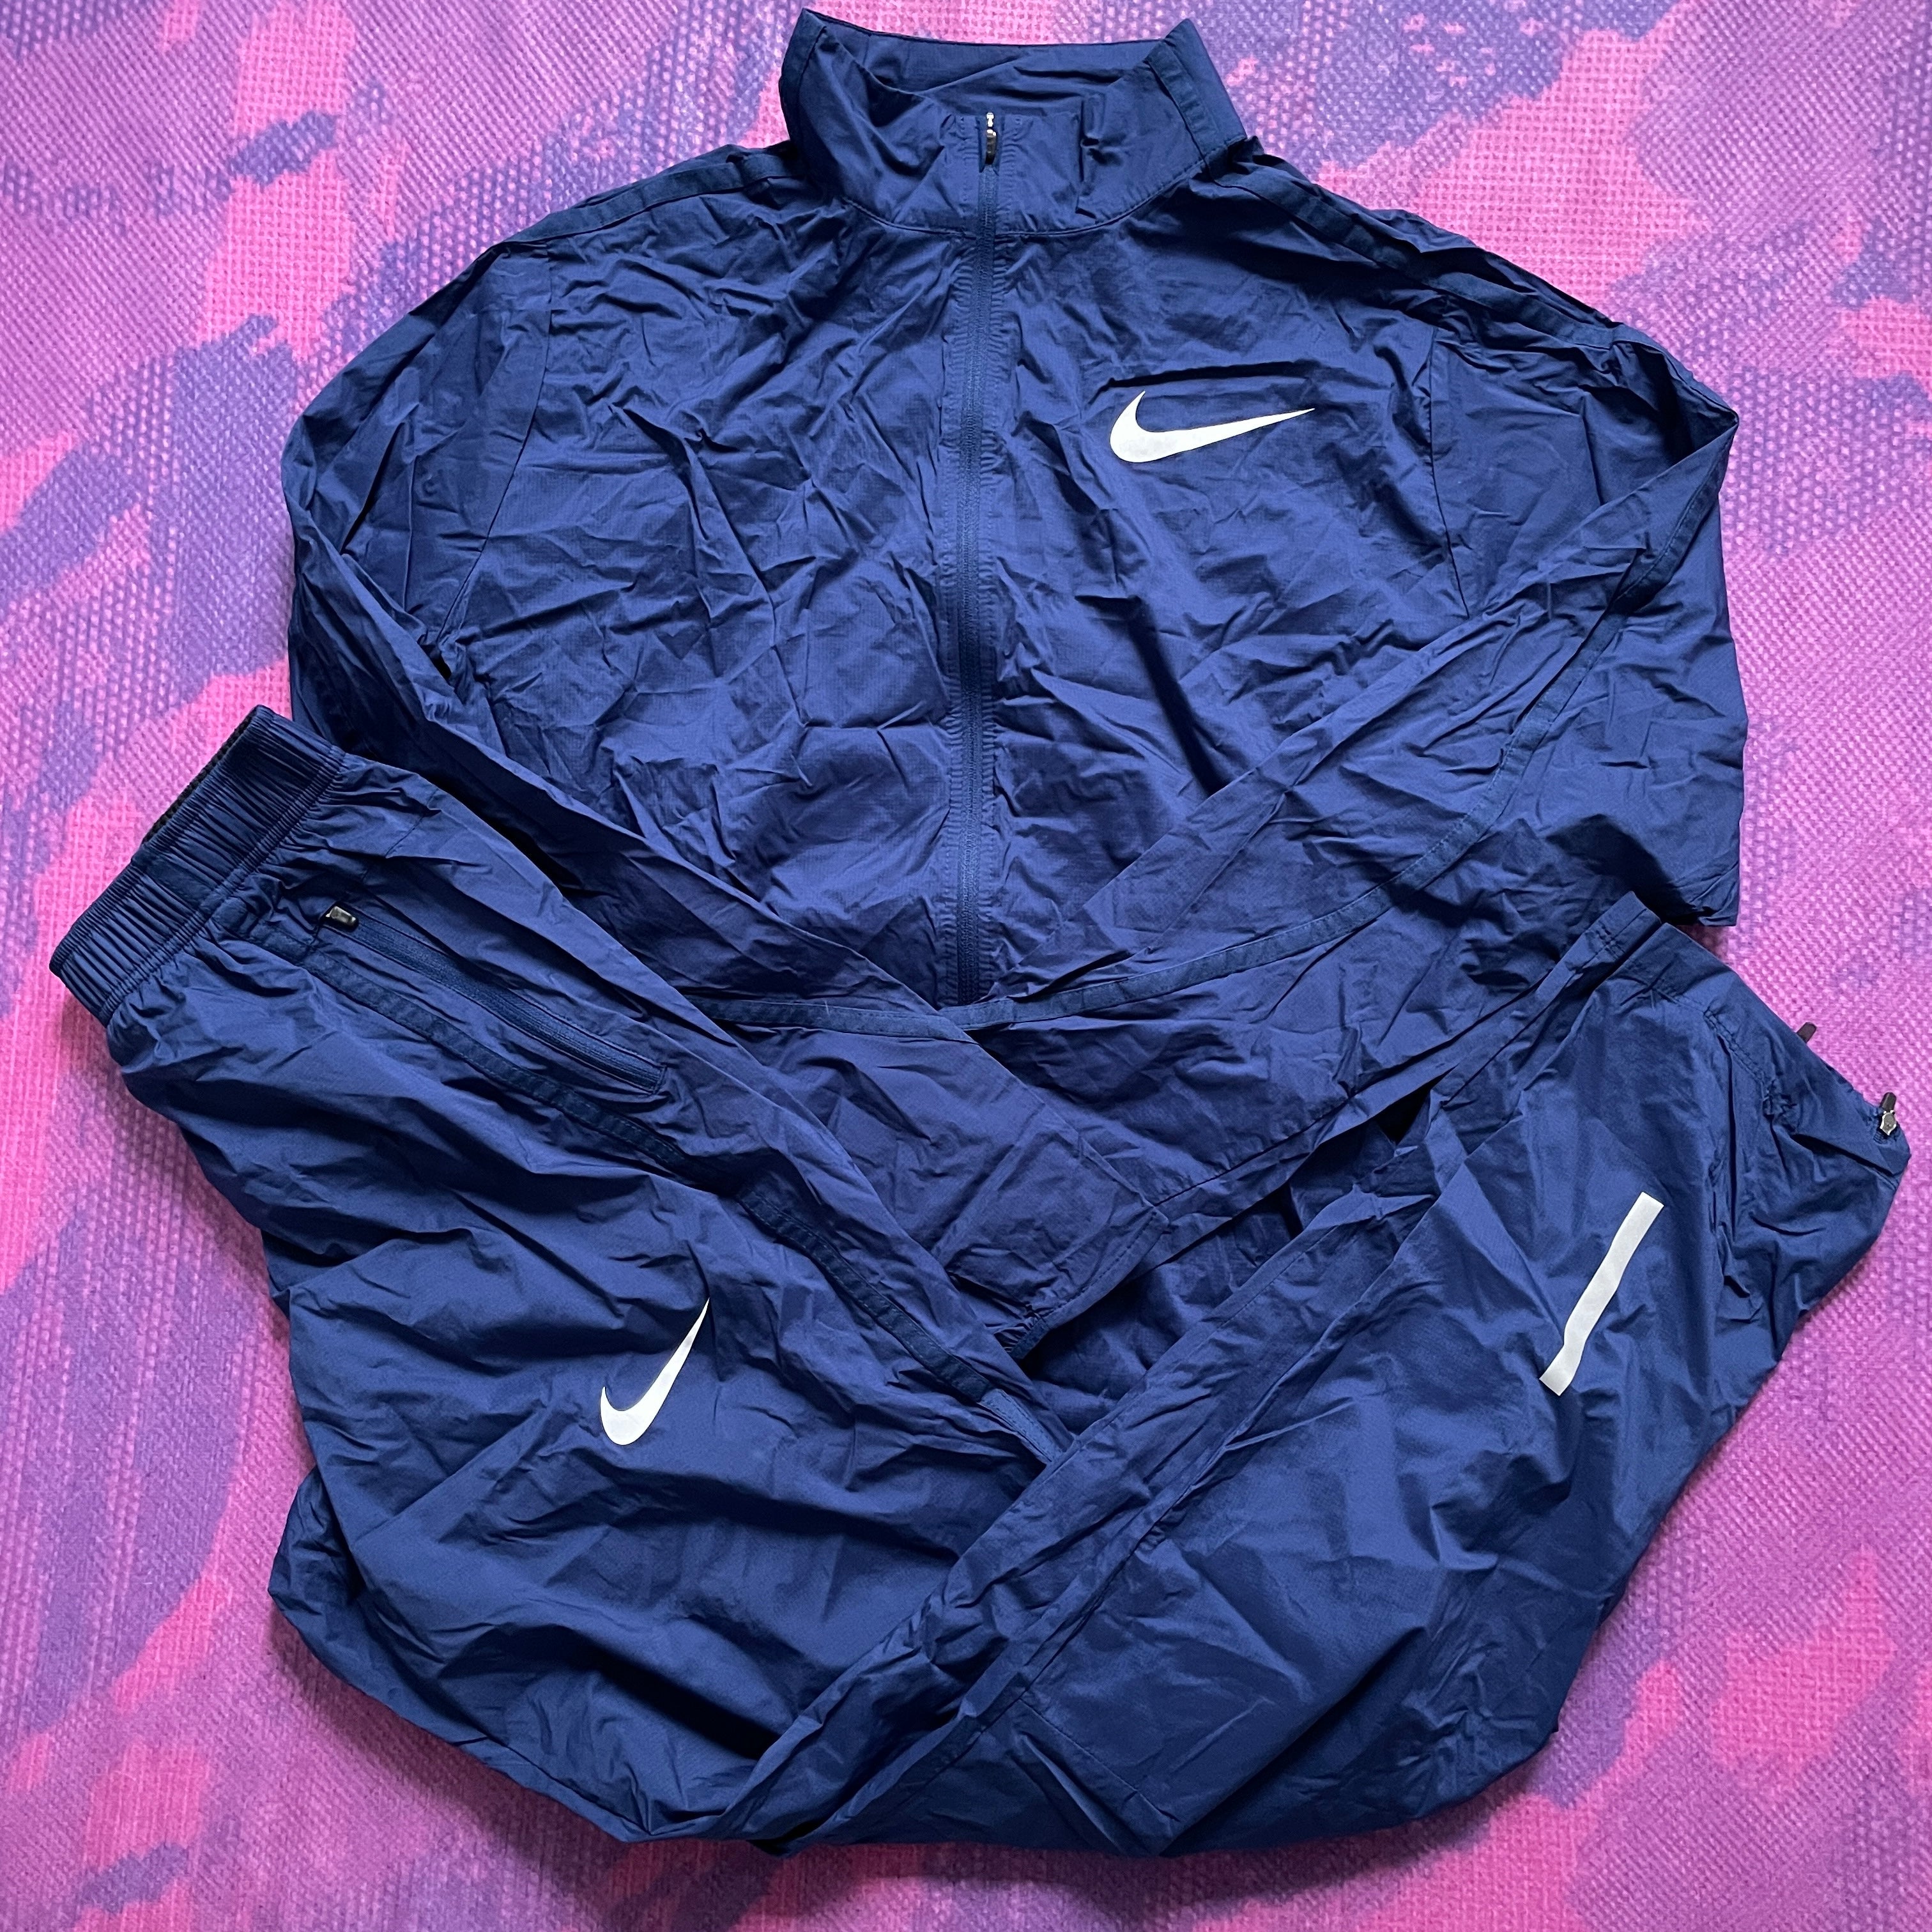 2020/21 Nike Pro Elite Wind Jacket and Pants (M)